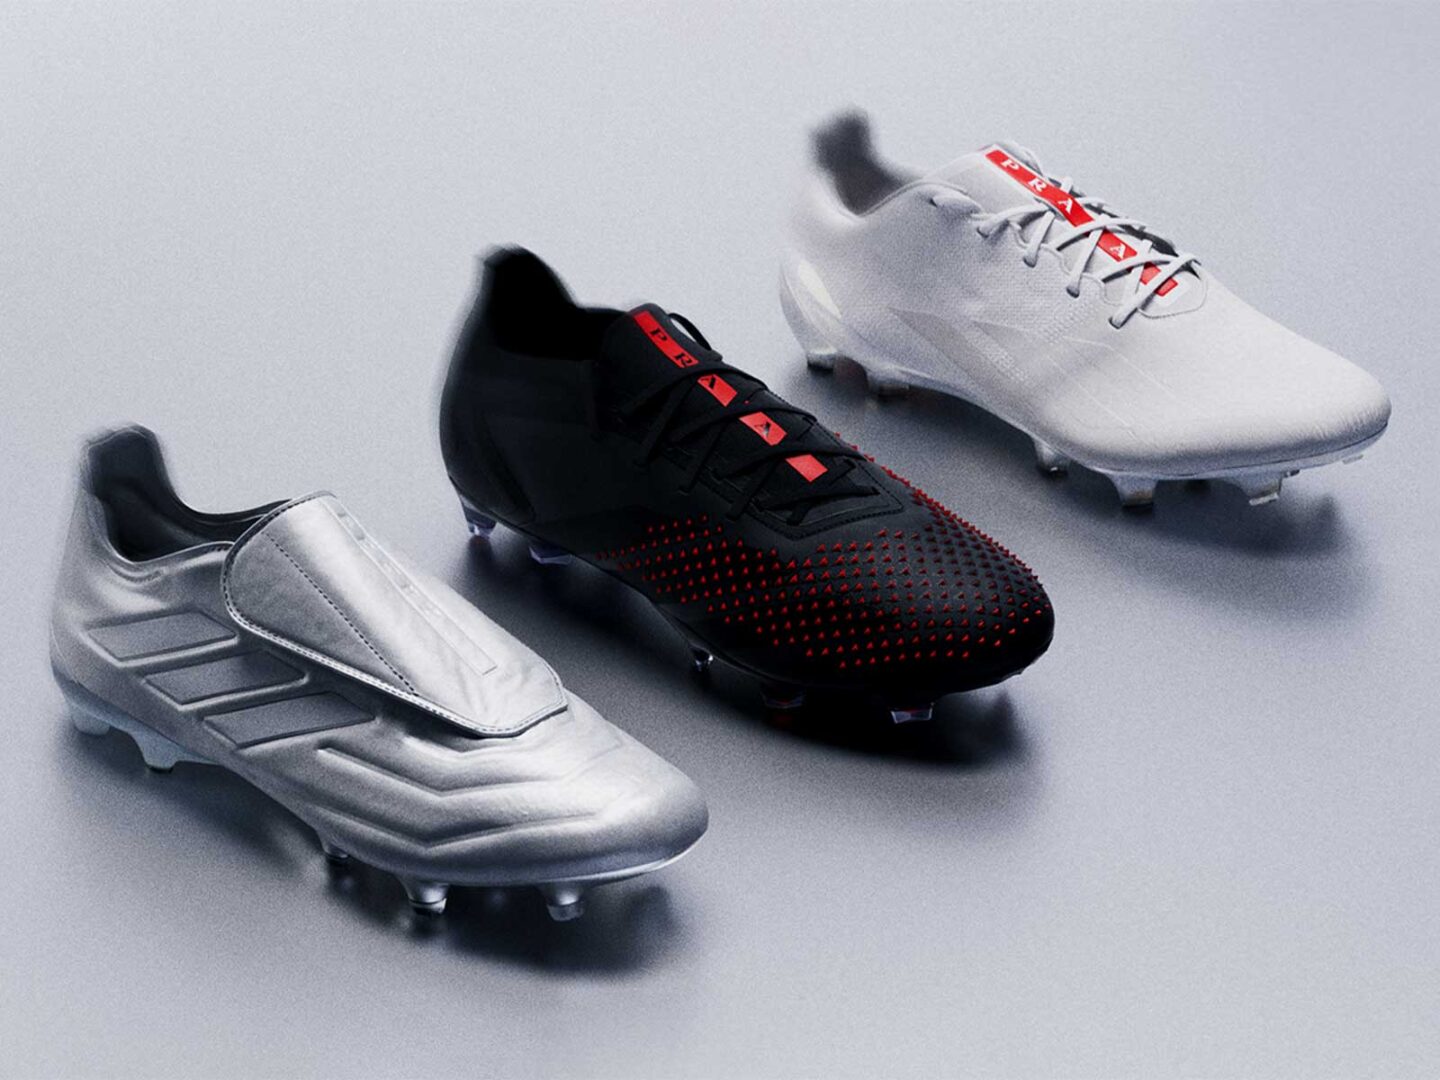 Football for Prada: Las primeras botas de fútbol de adidas y Prada -  HIGHXTAR.